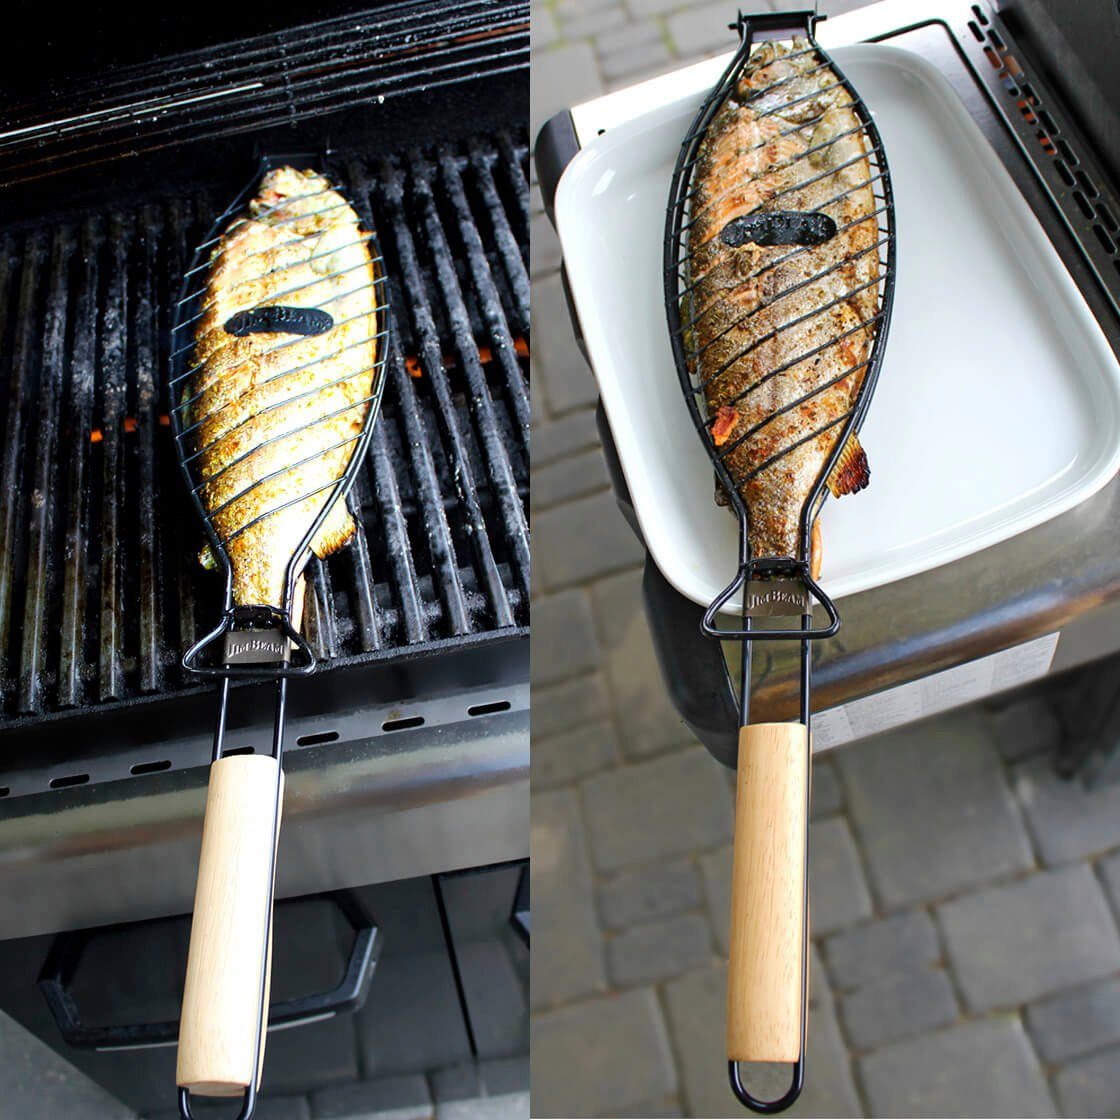 Jim Beam BBQ Grillschale, Holz, Metall, mit Parawoodgriff für große Fische | Grillpfannen